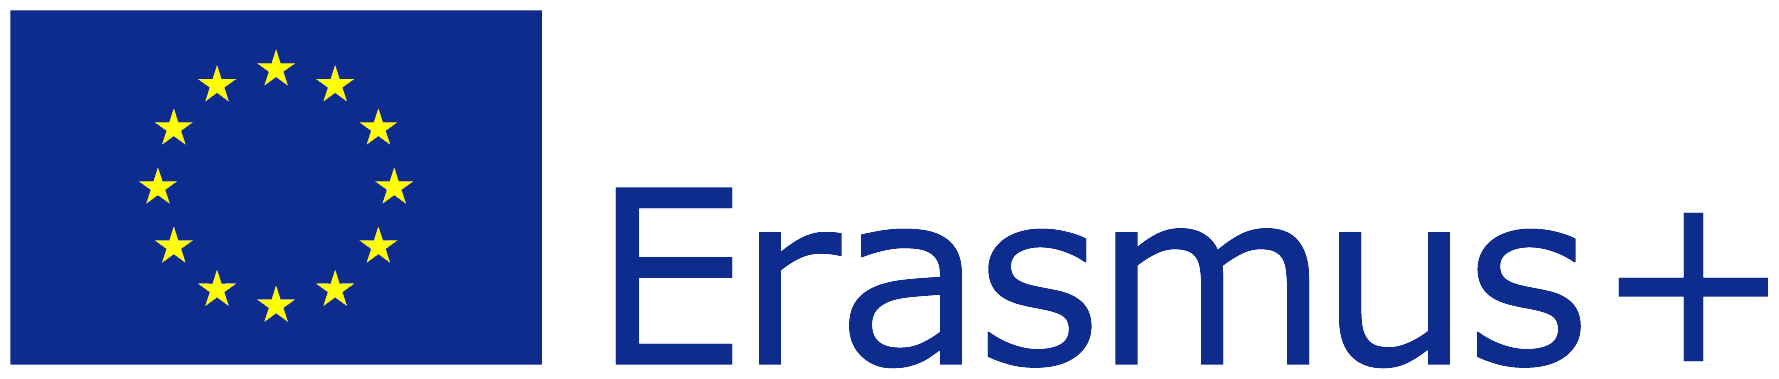 Erasmus-logo-color